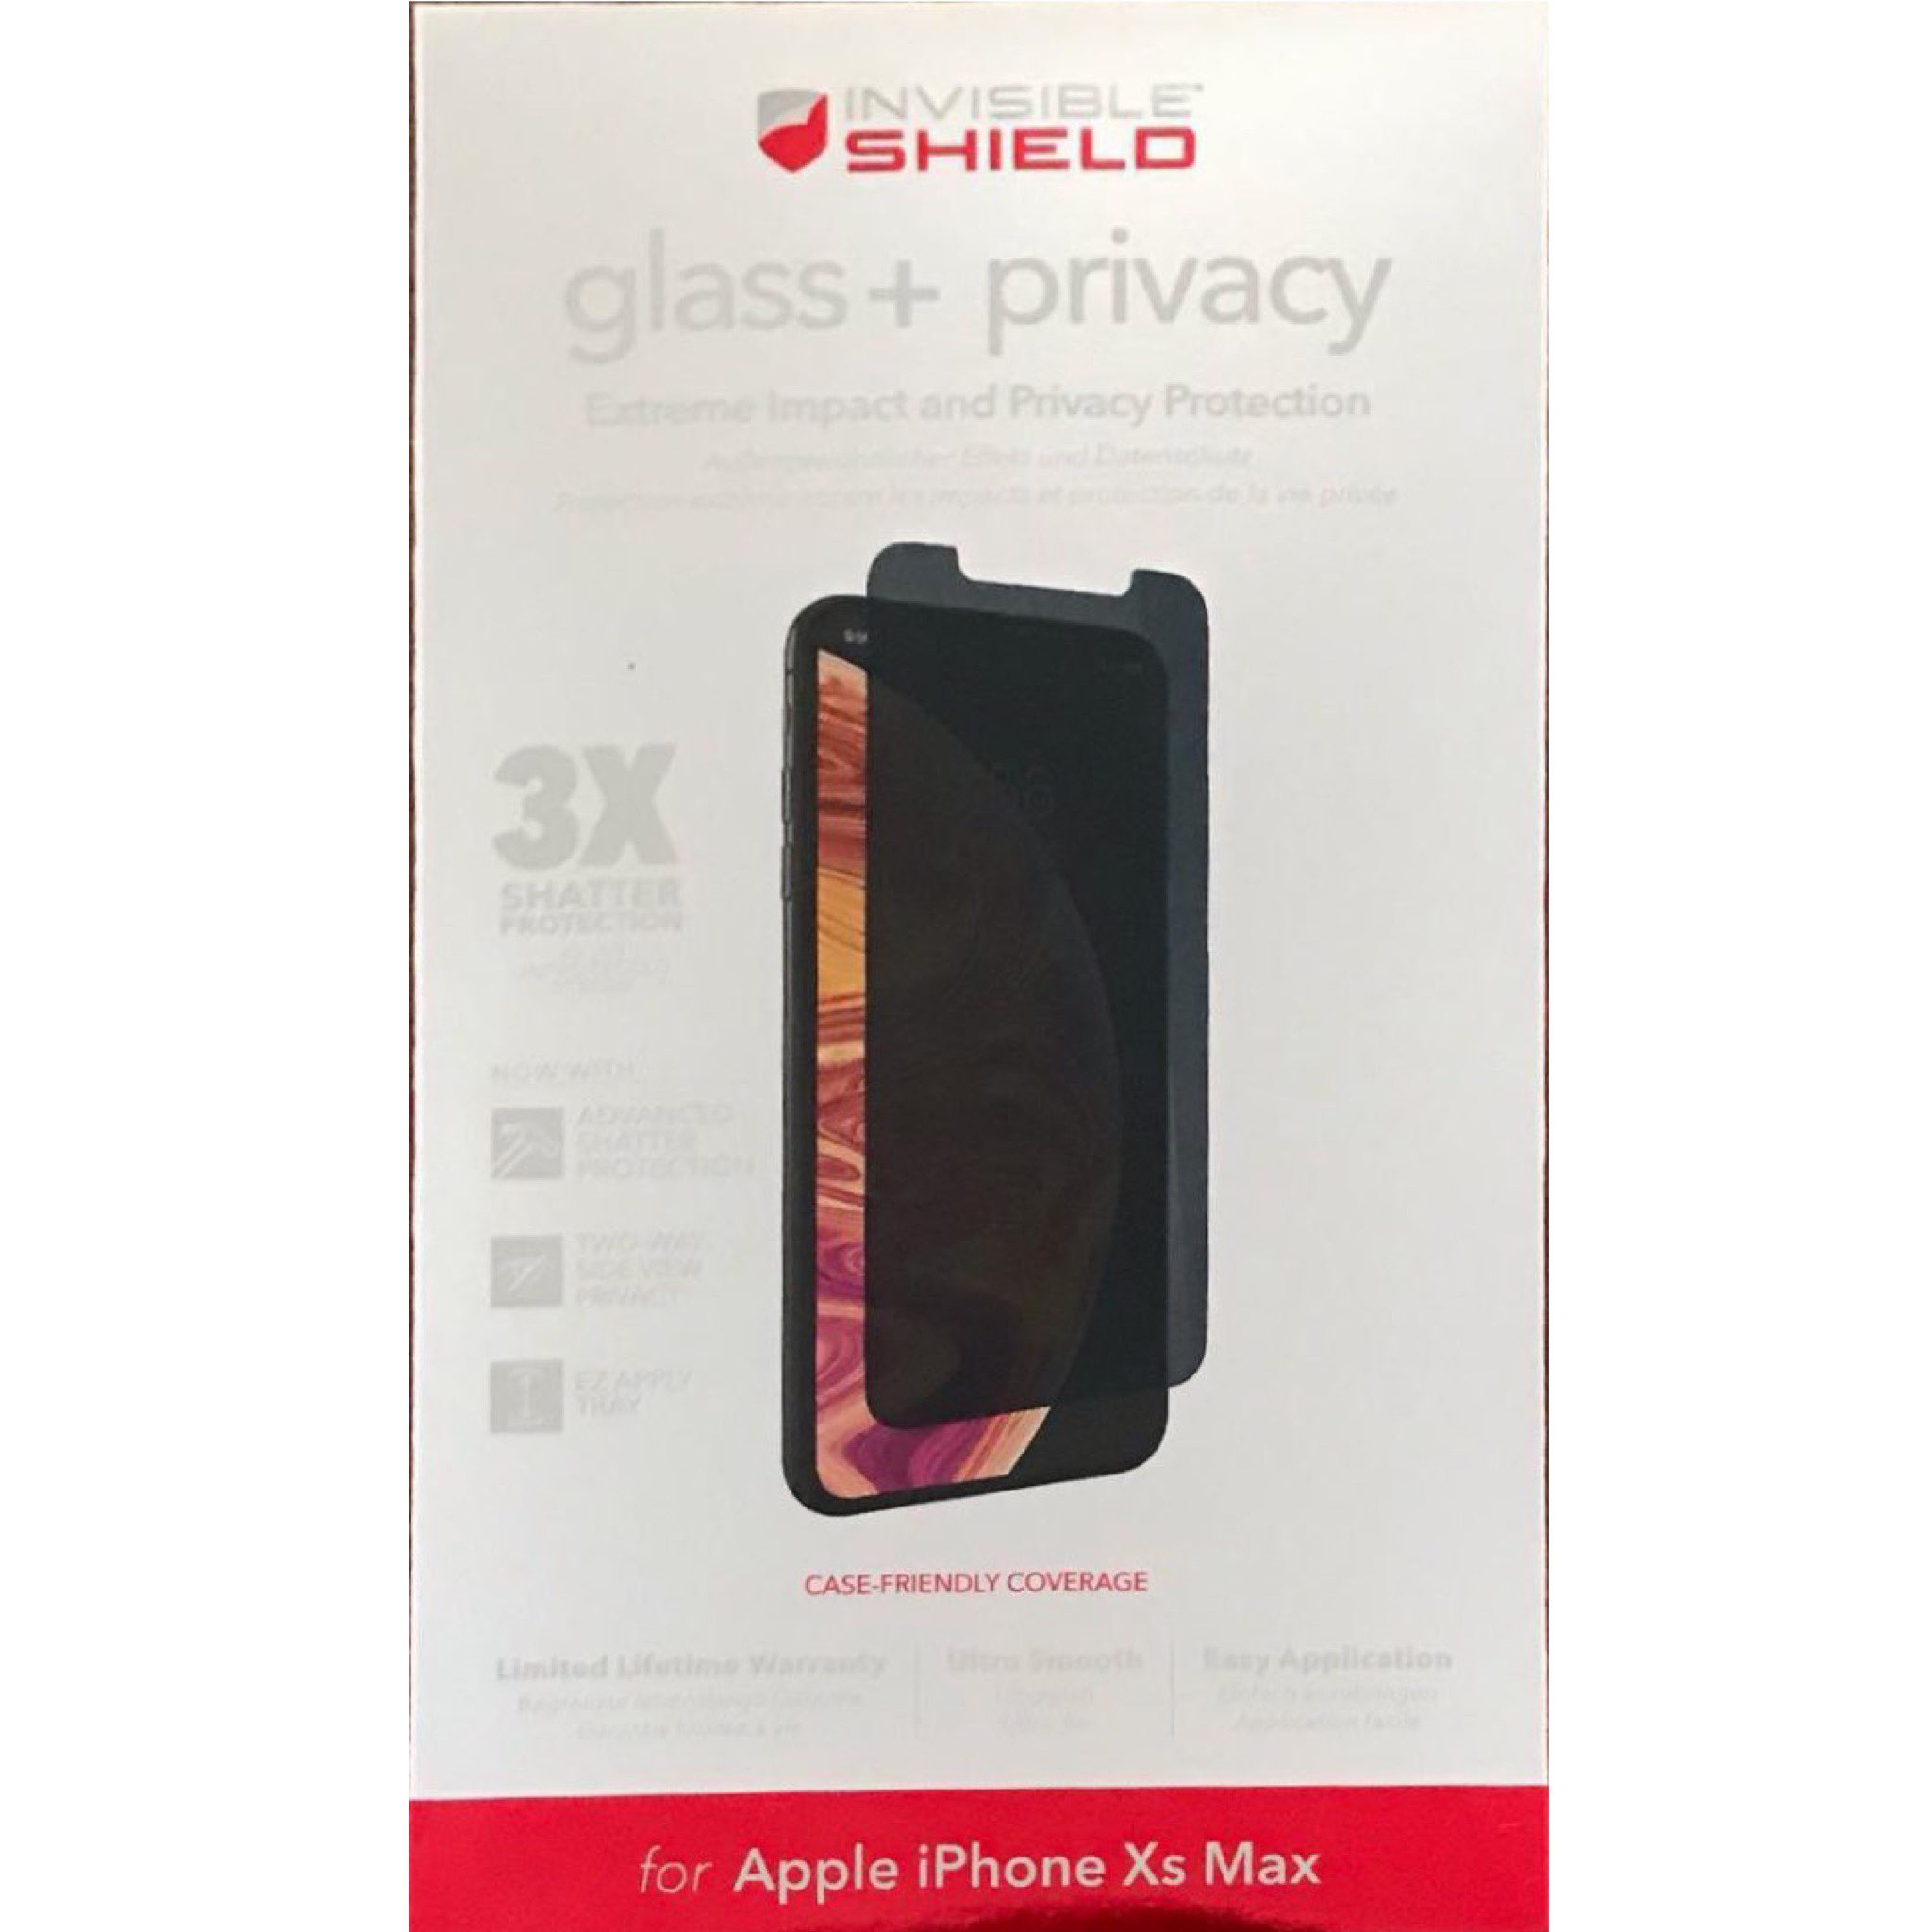 استكر الخصوصية لأيفون اكس اس ماكس منINVISIBLE SHIELD